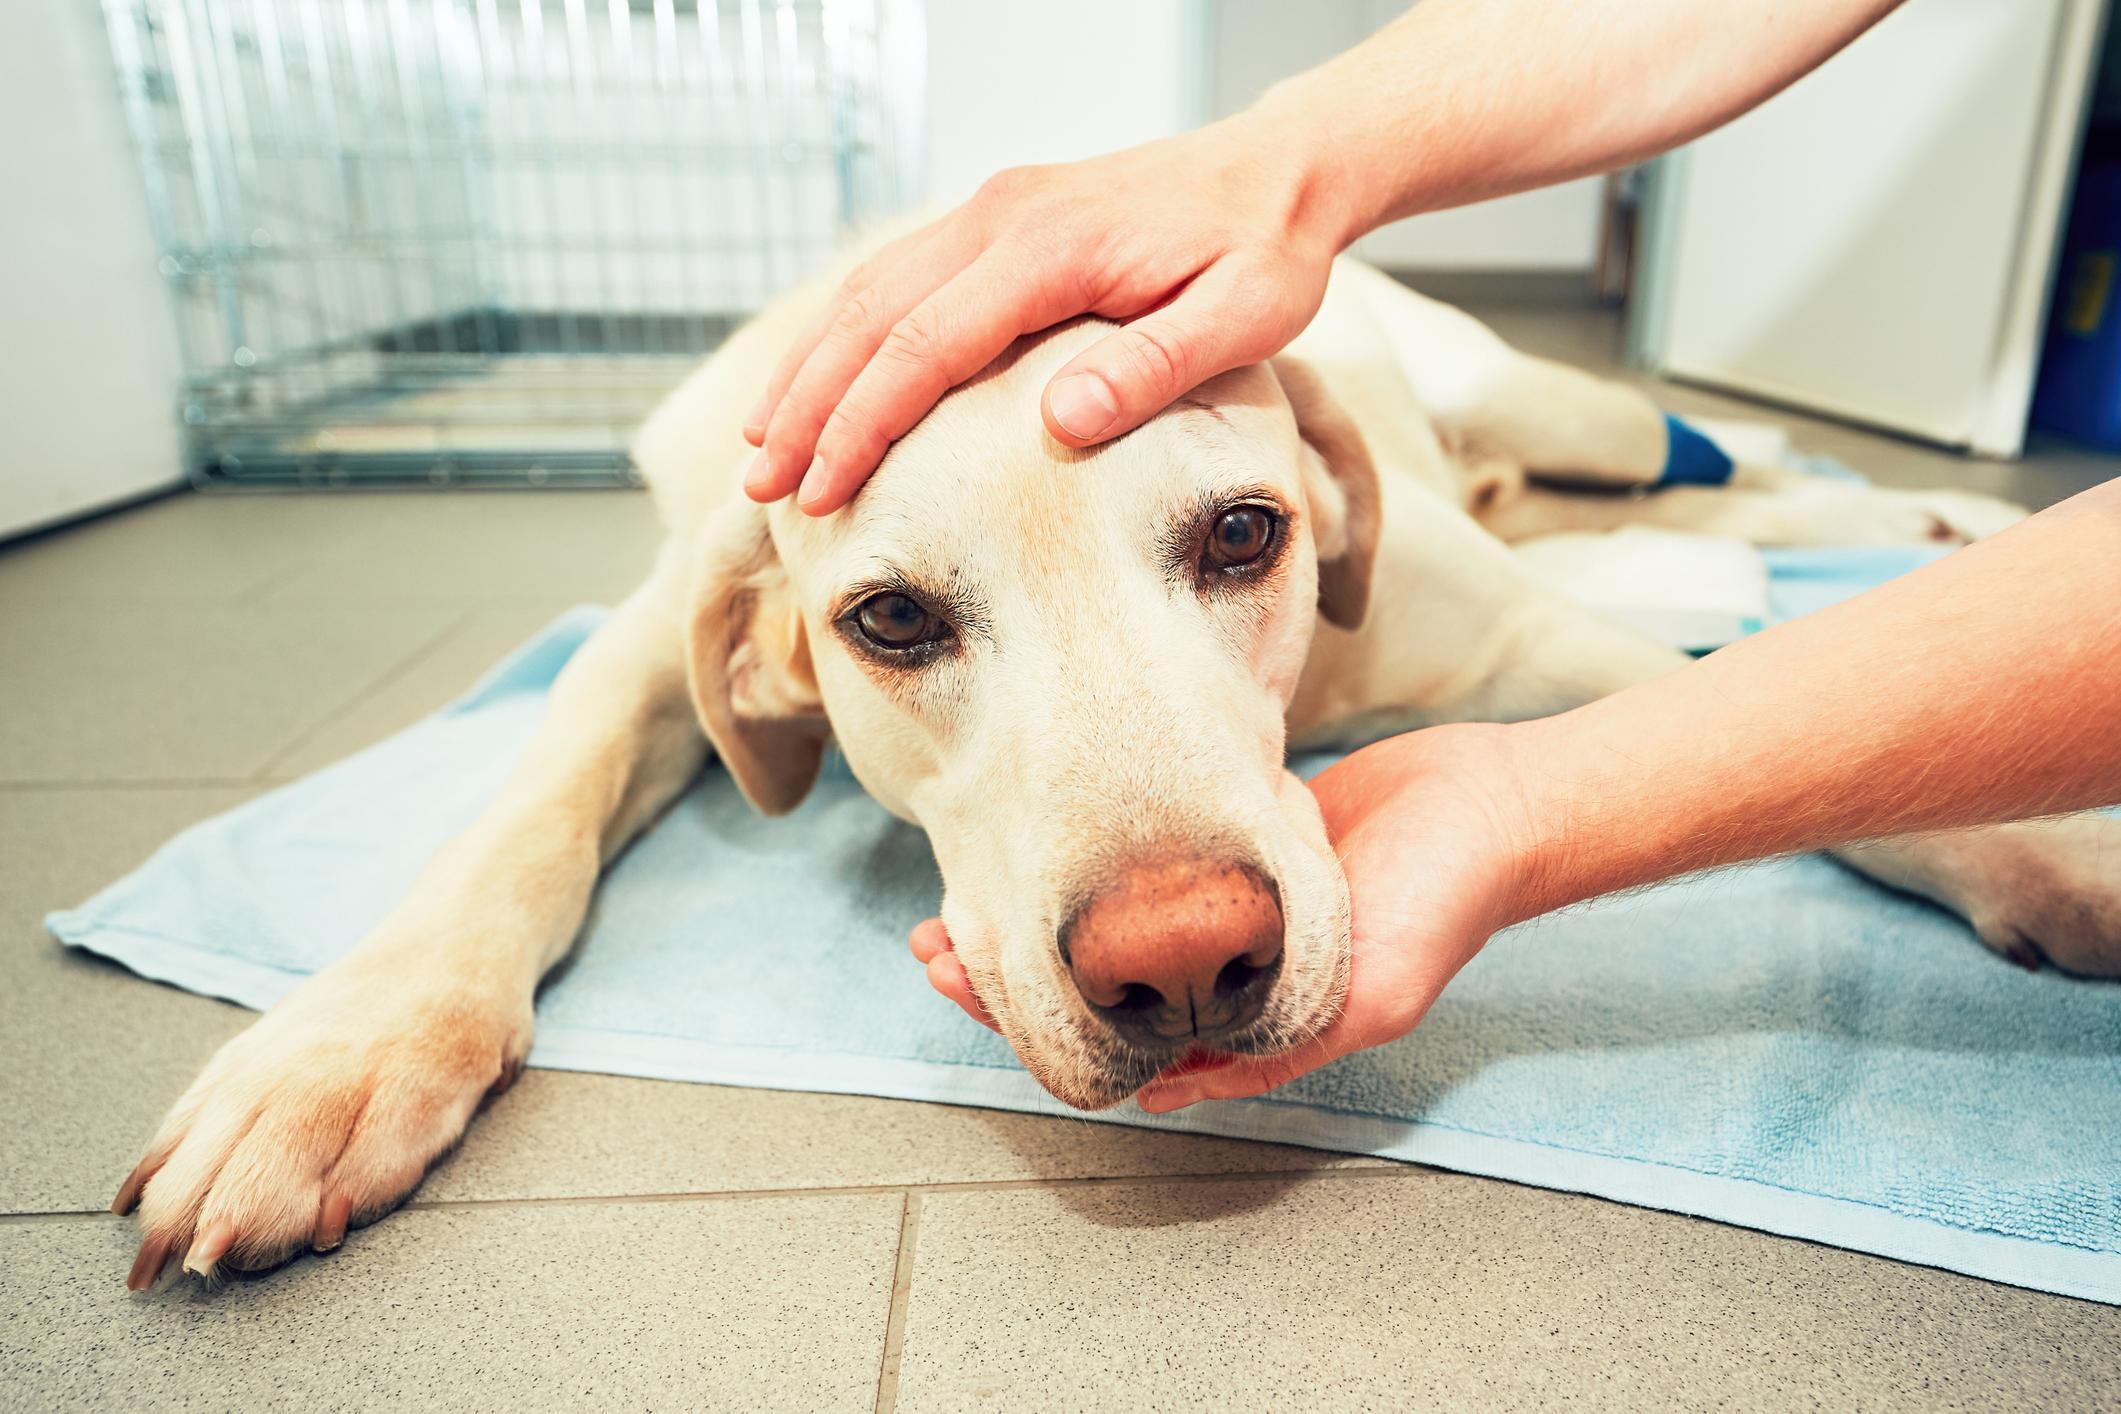 Köpeklerdeki kanseri tedavi etmek için kullanılan yöntem insanlara fayda sağlayabilir